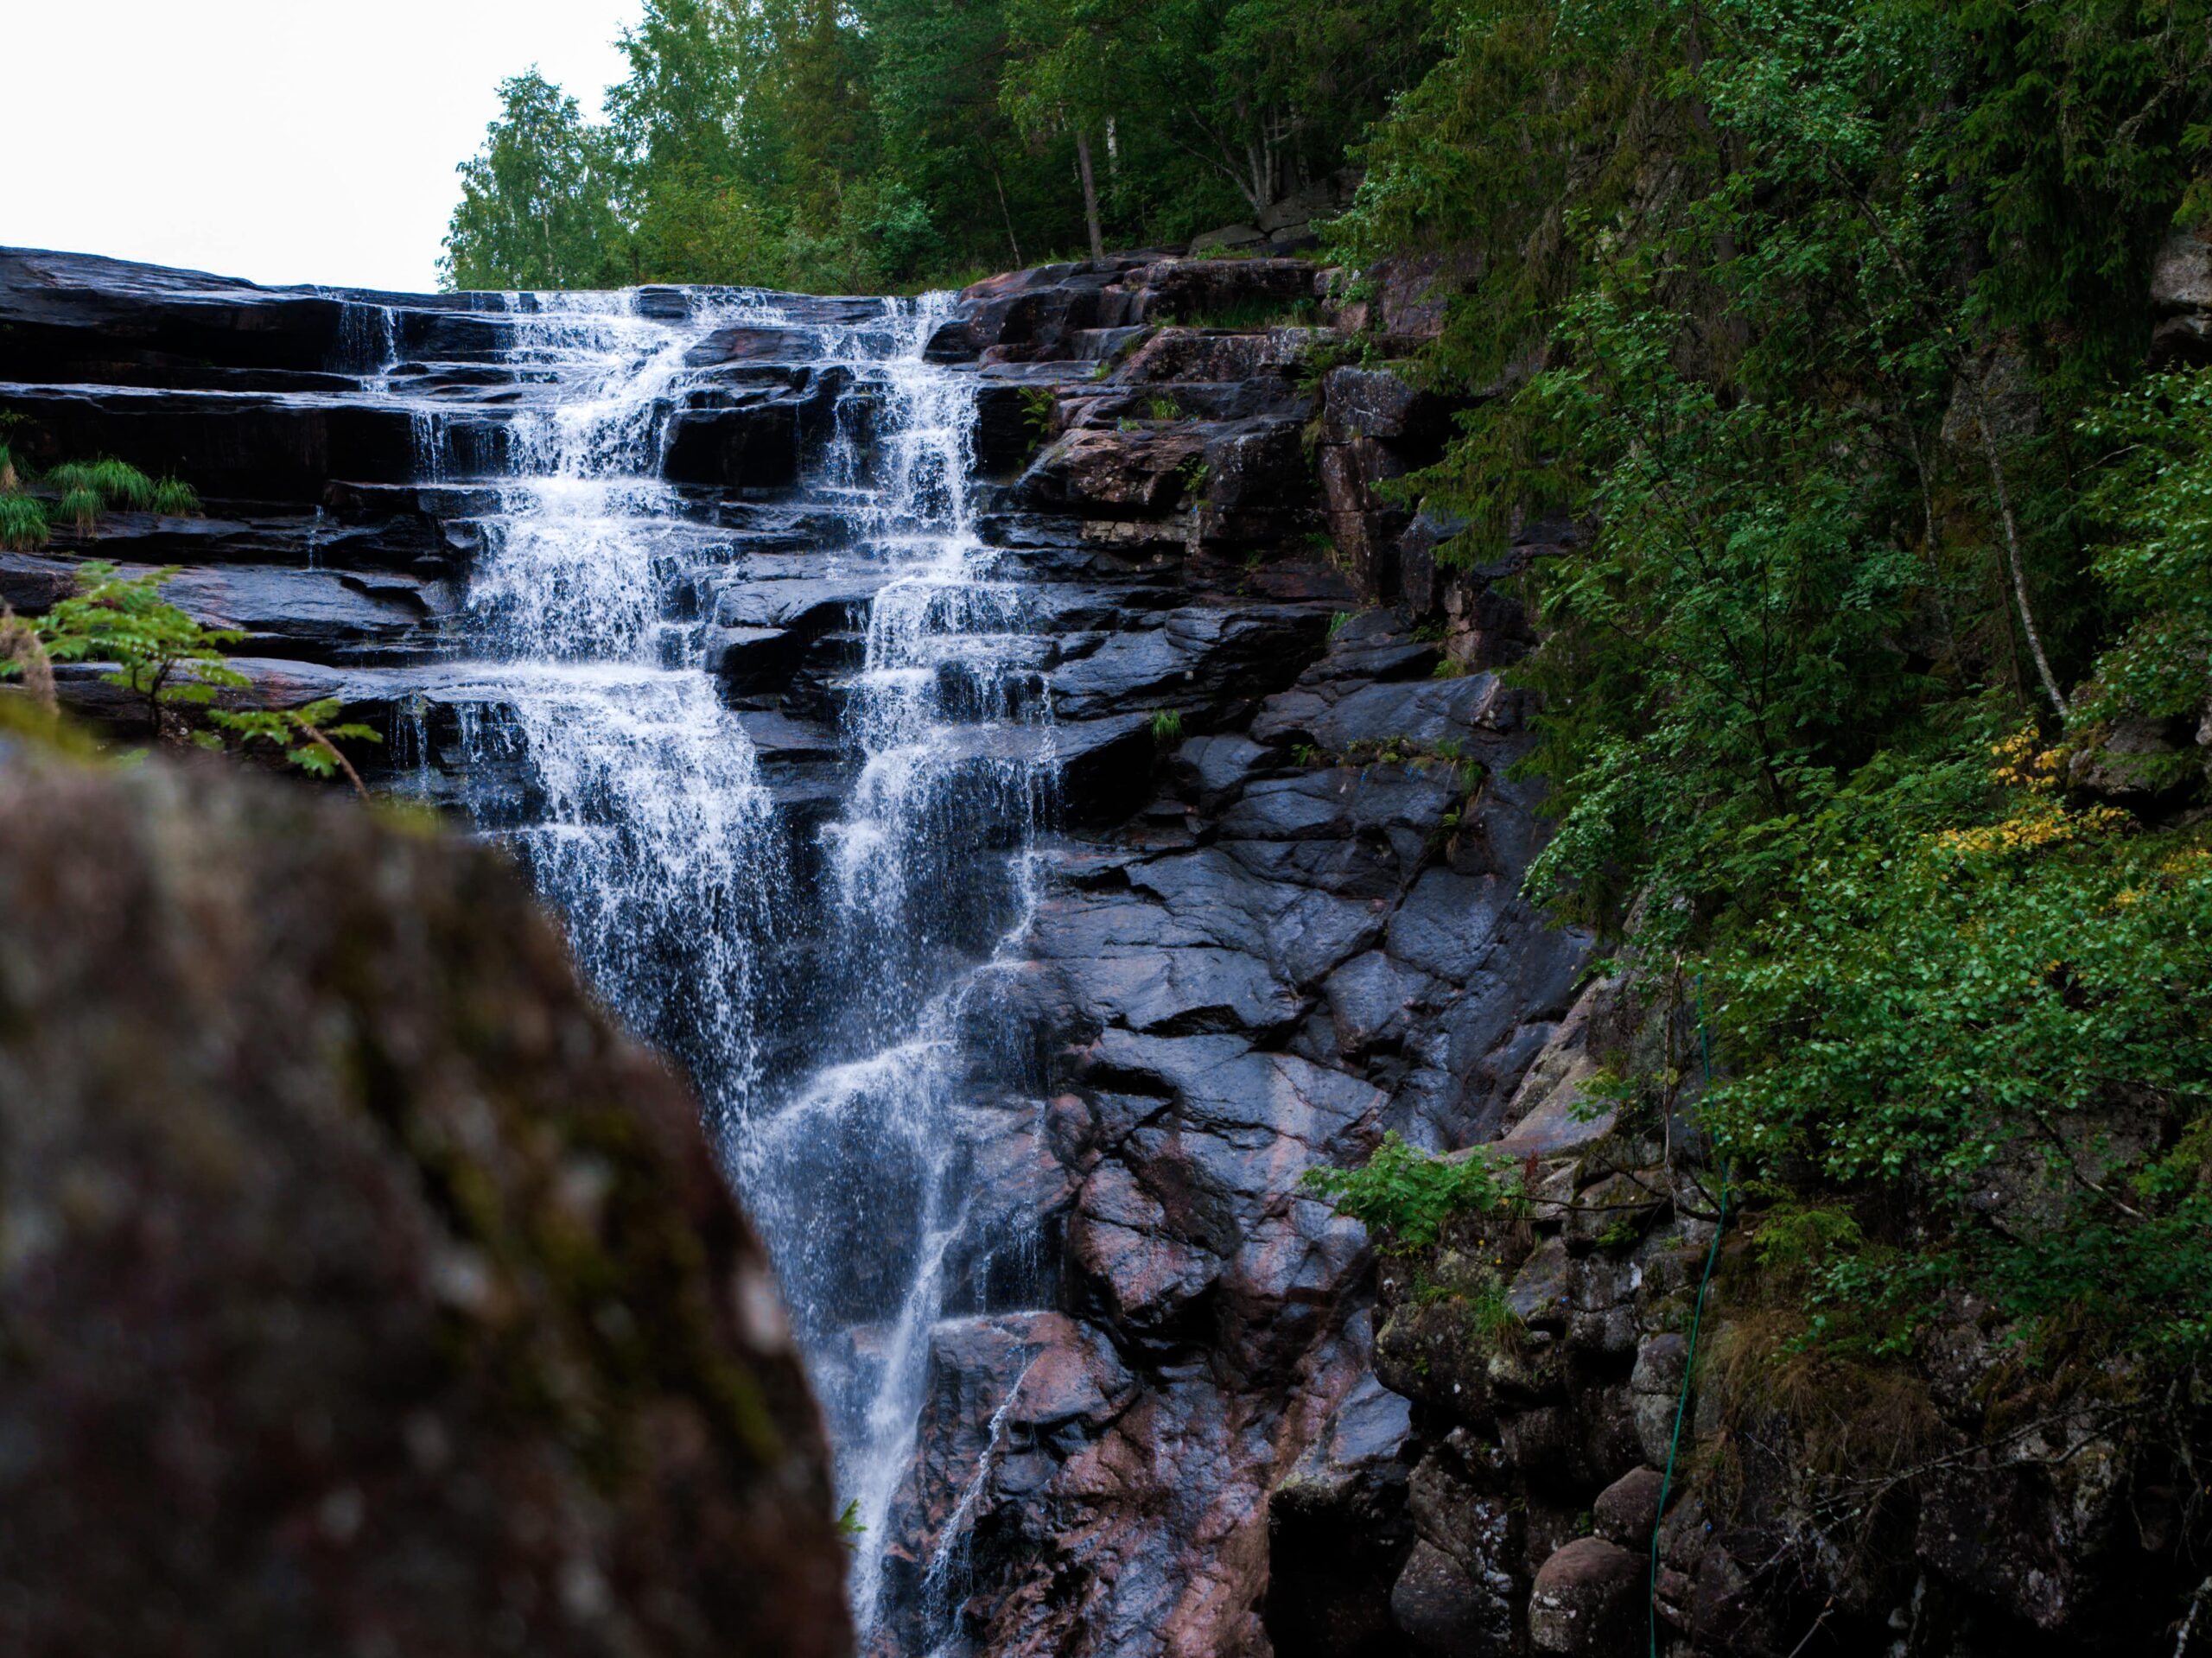 solbergfossen wodospad w pobliżu Oslo